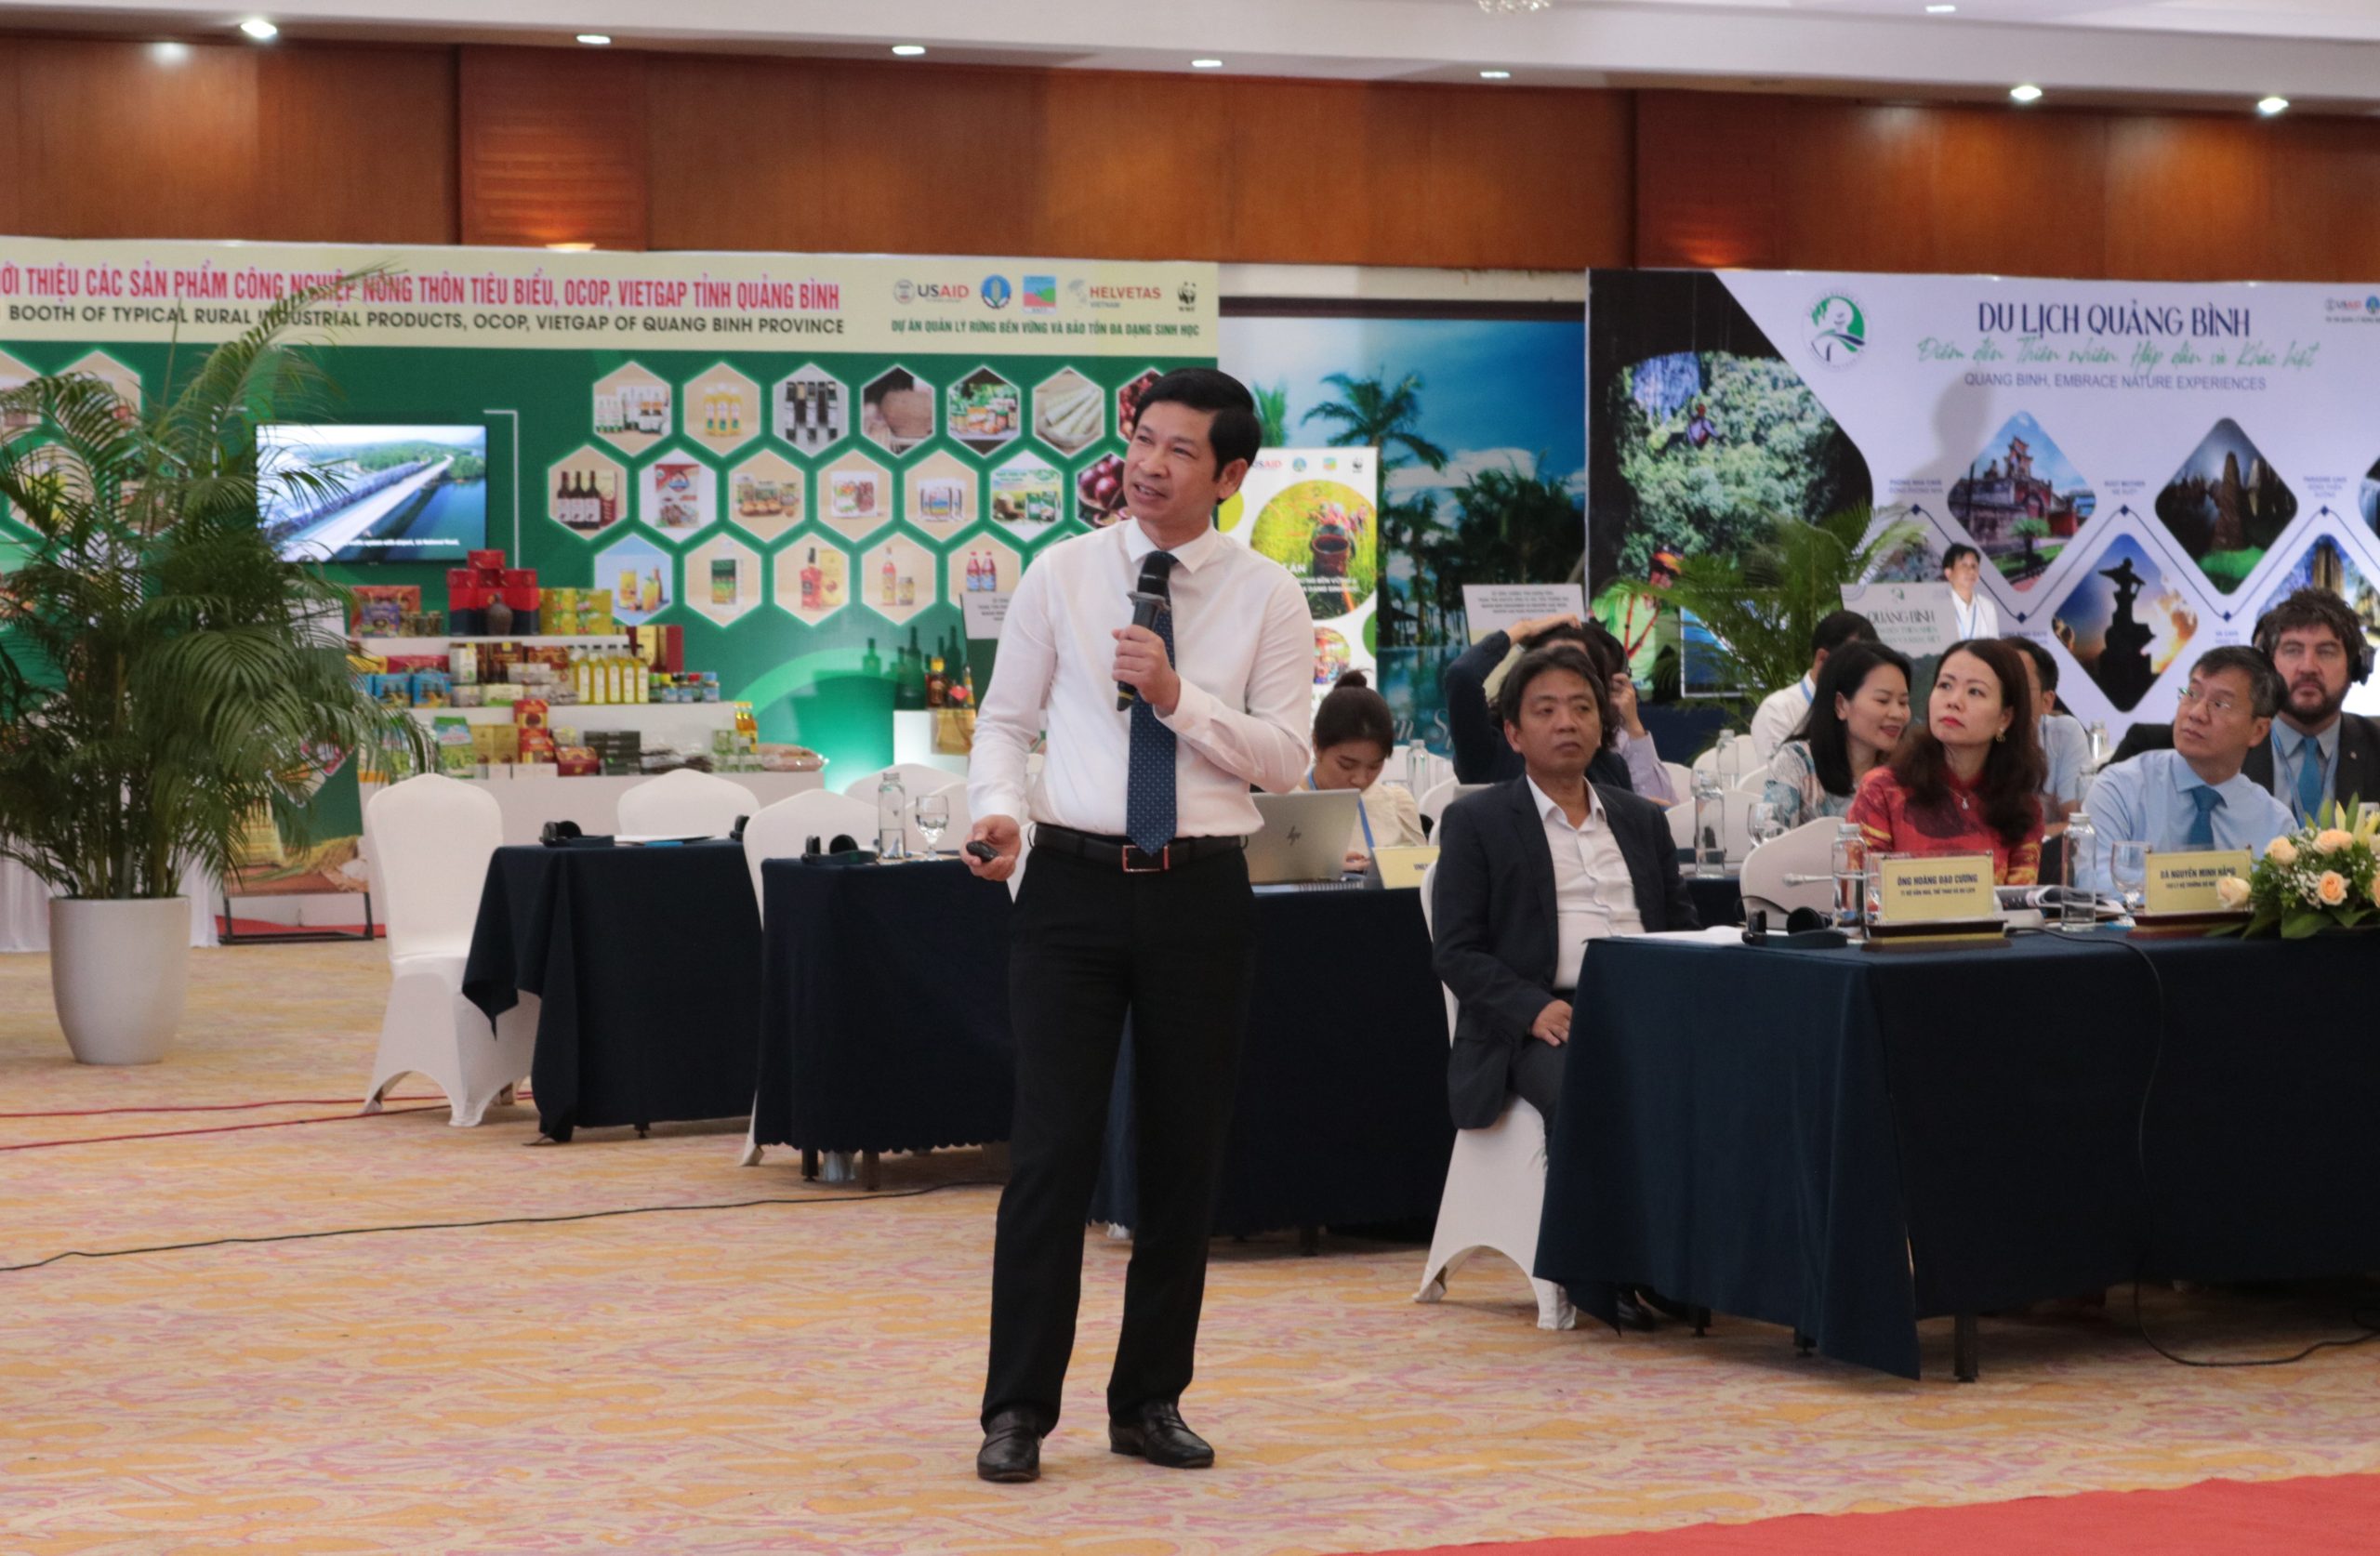 Phó Chủ tịch UBND tỉnh Hồ An Phong trình bày tham luận tại hội thảo.